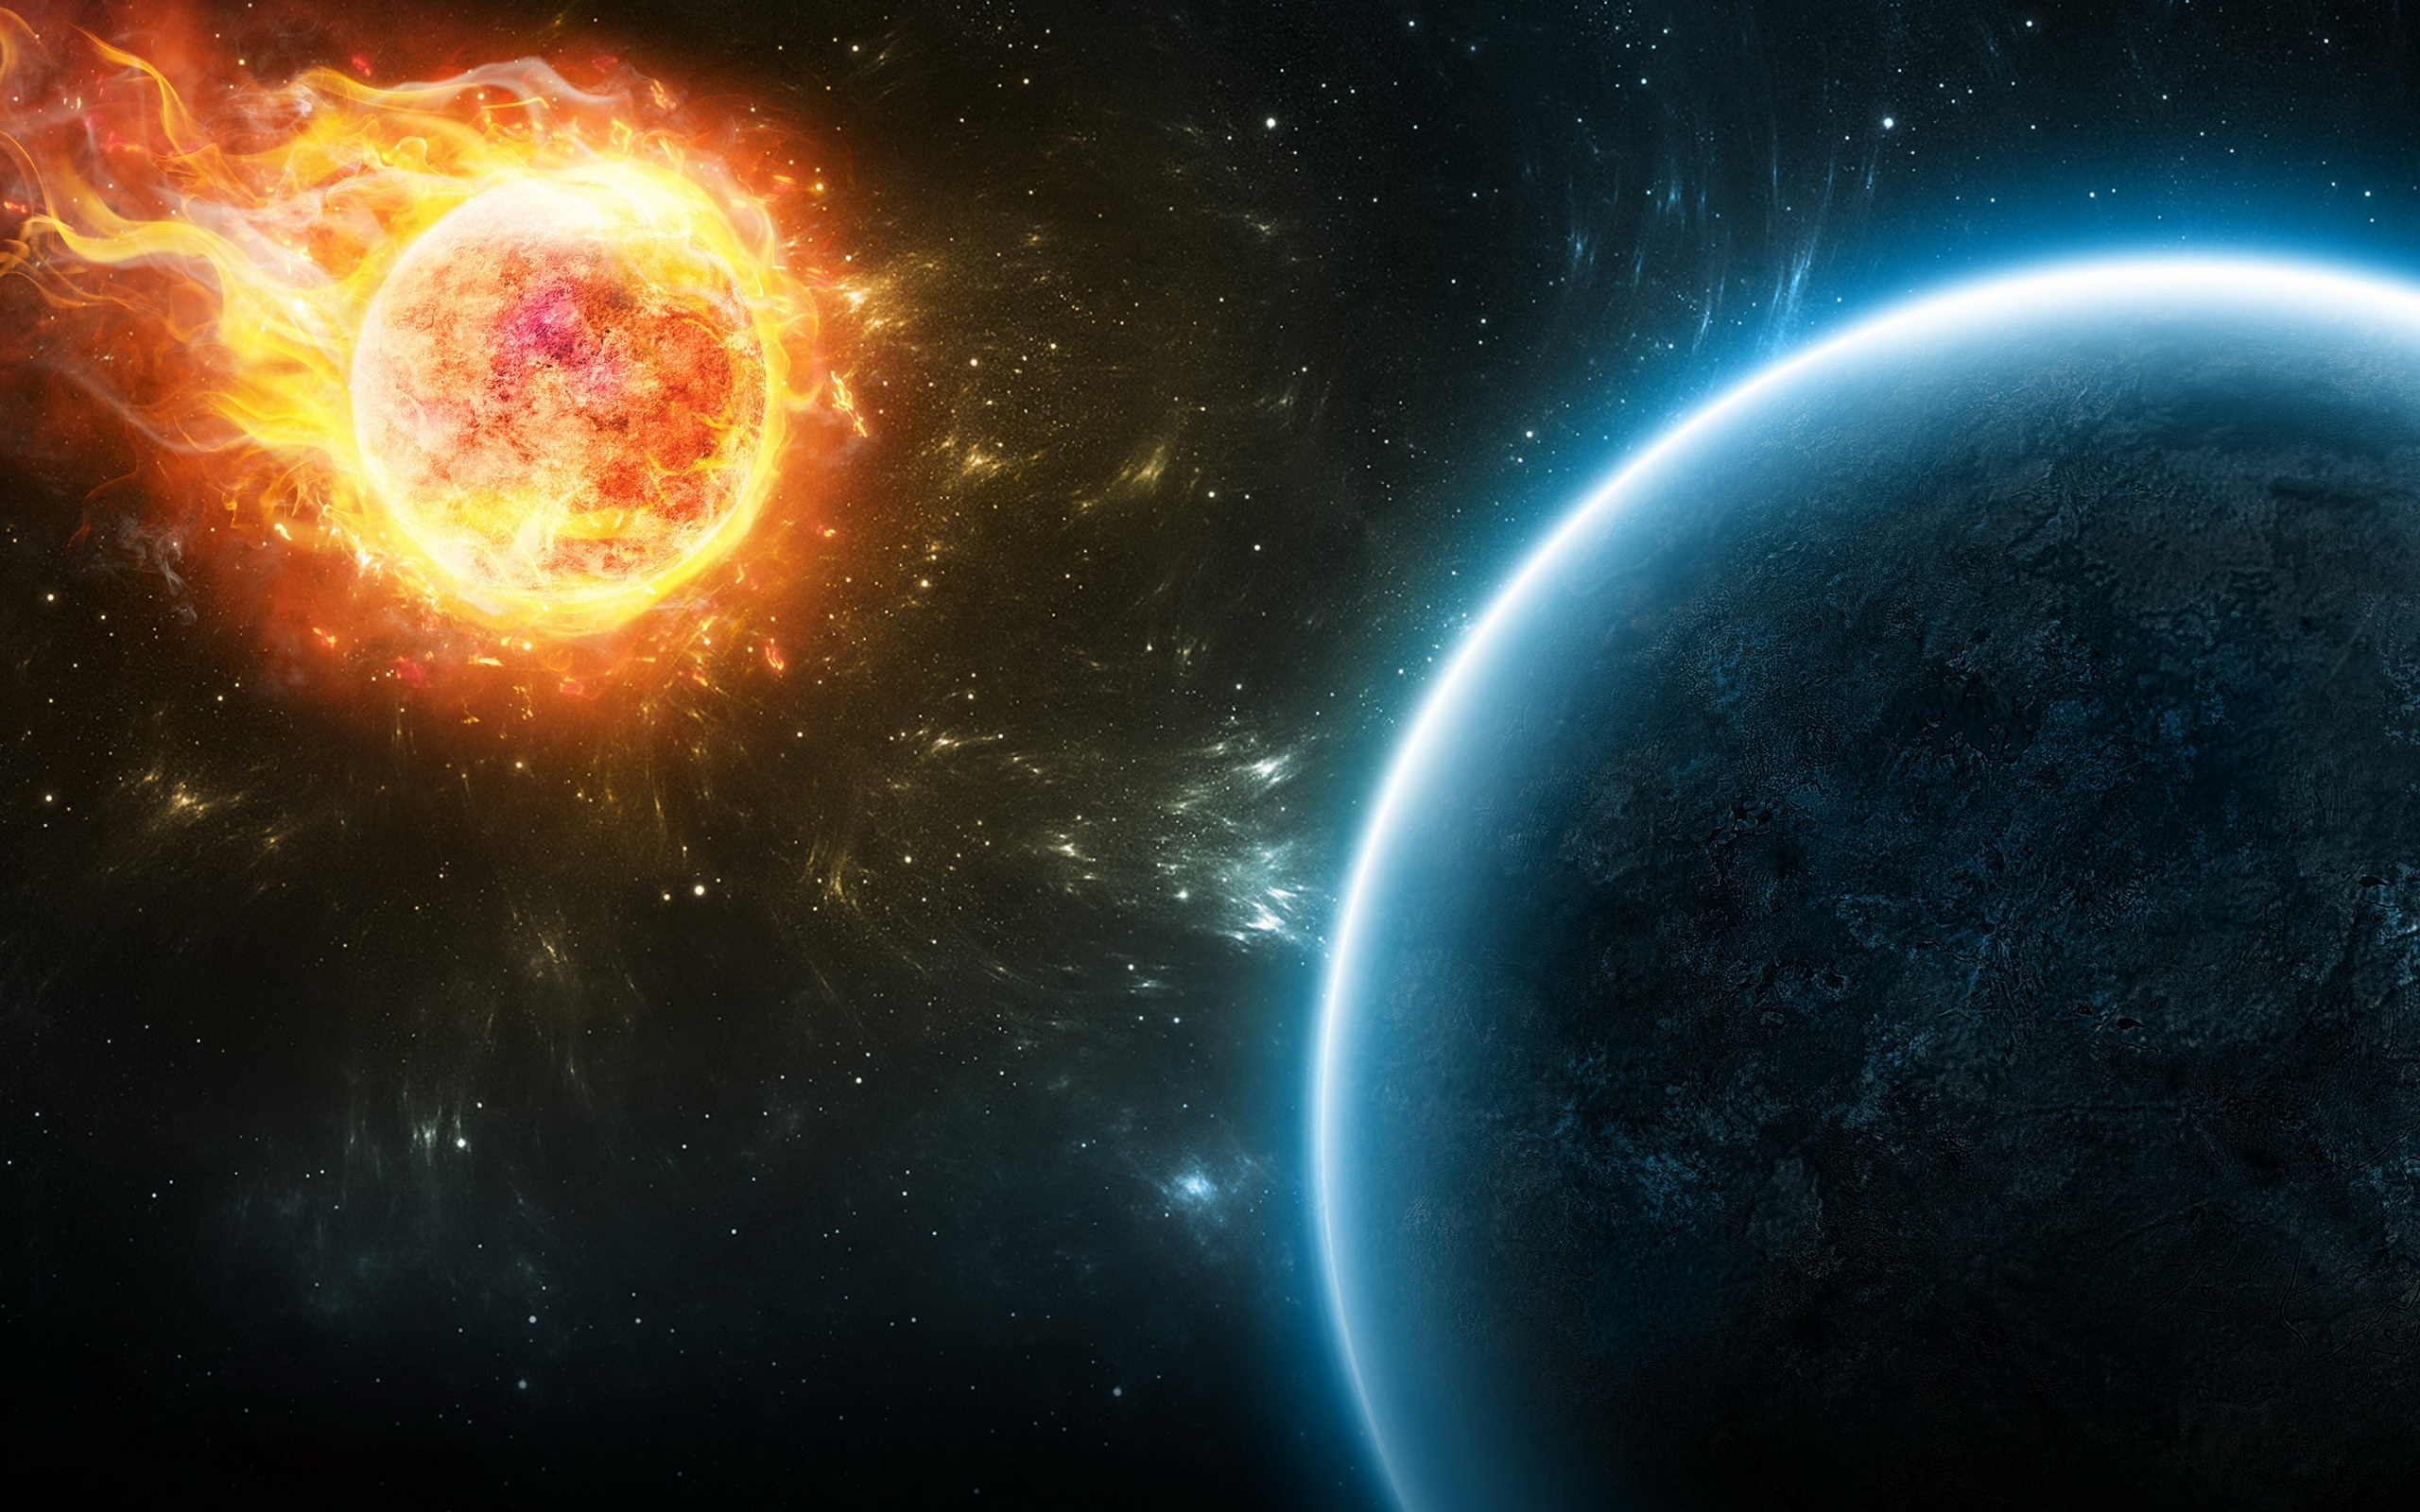 Обои сверхновая звезда огонь планета картинки на рабочий стол на тему Космос - скачать бесплатно